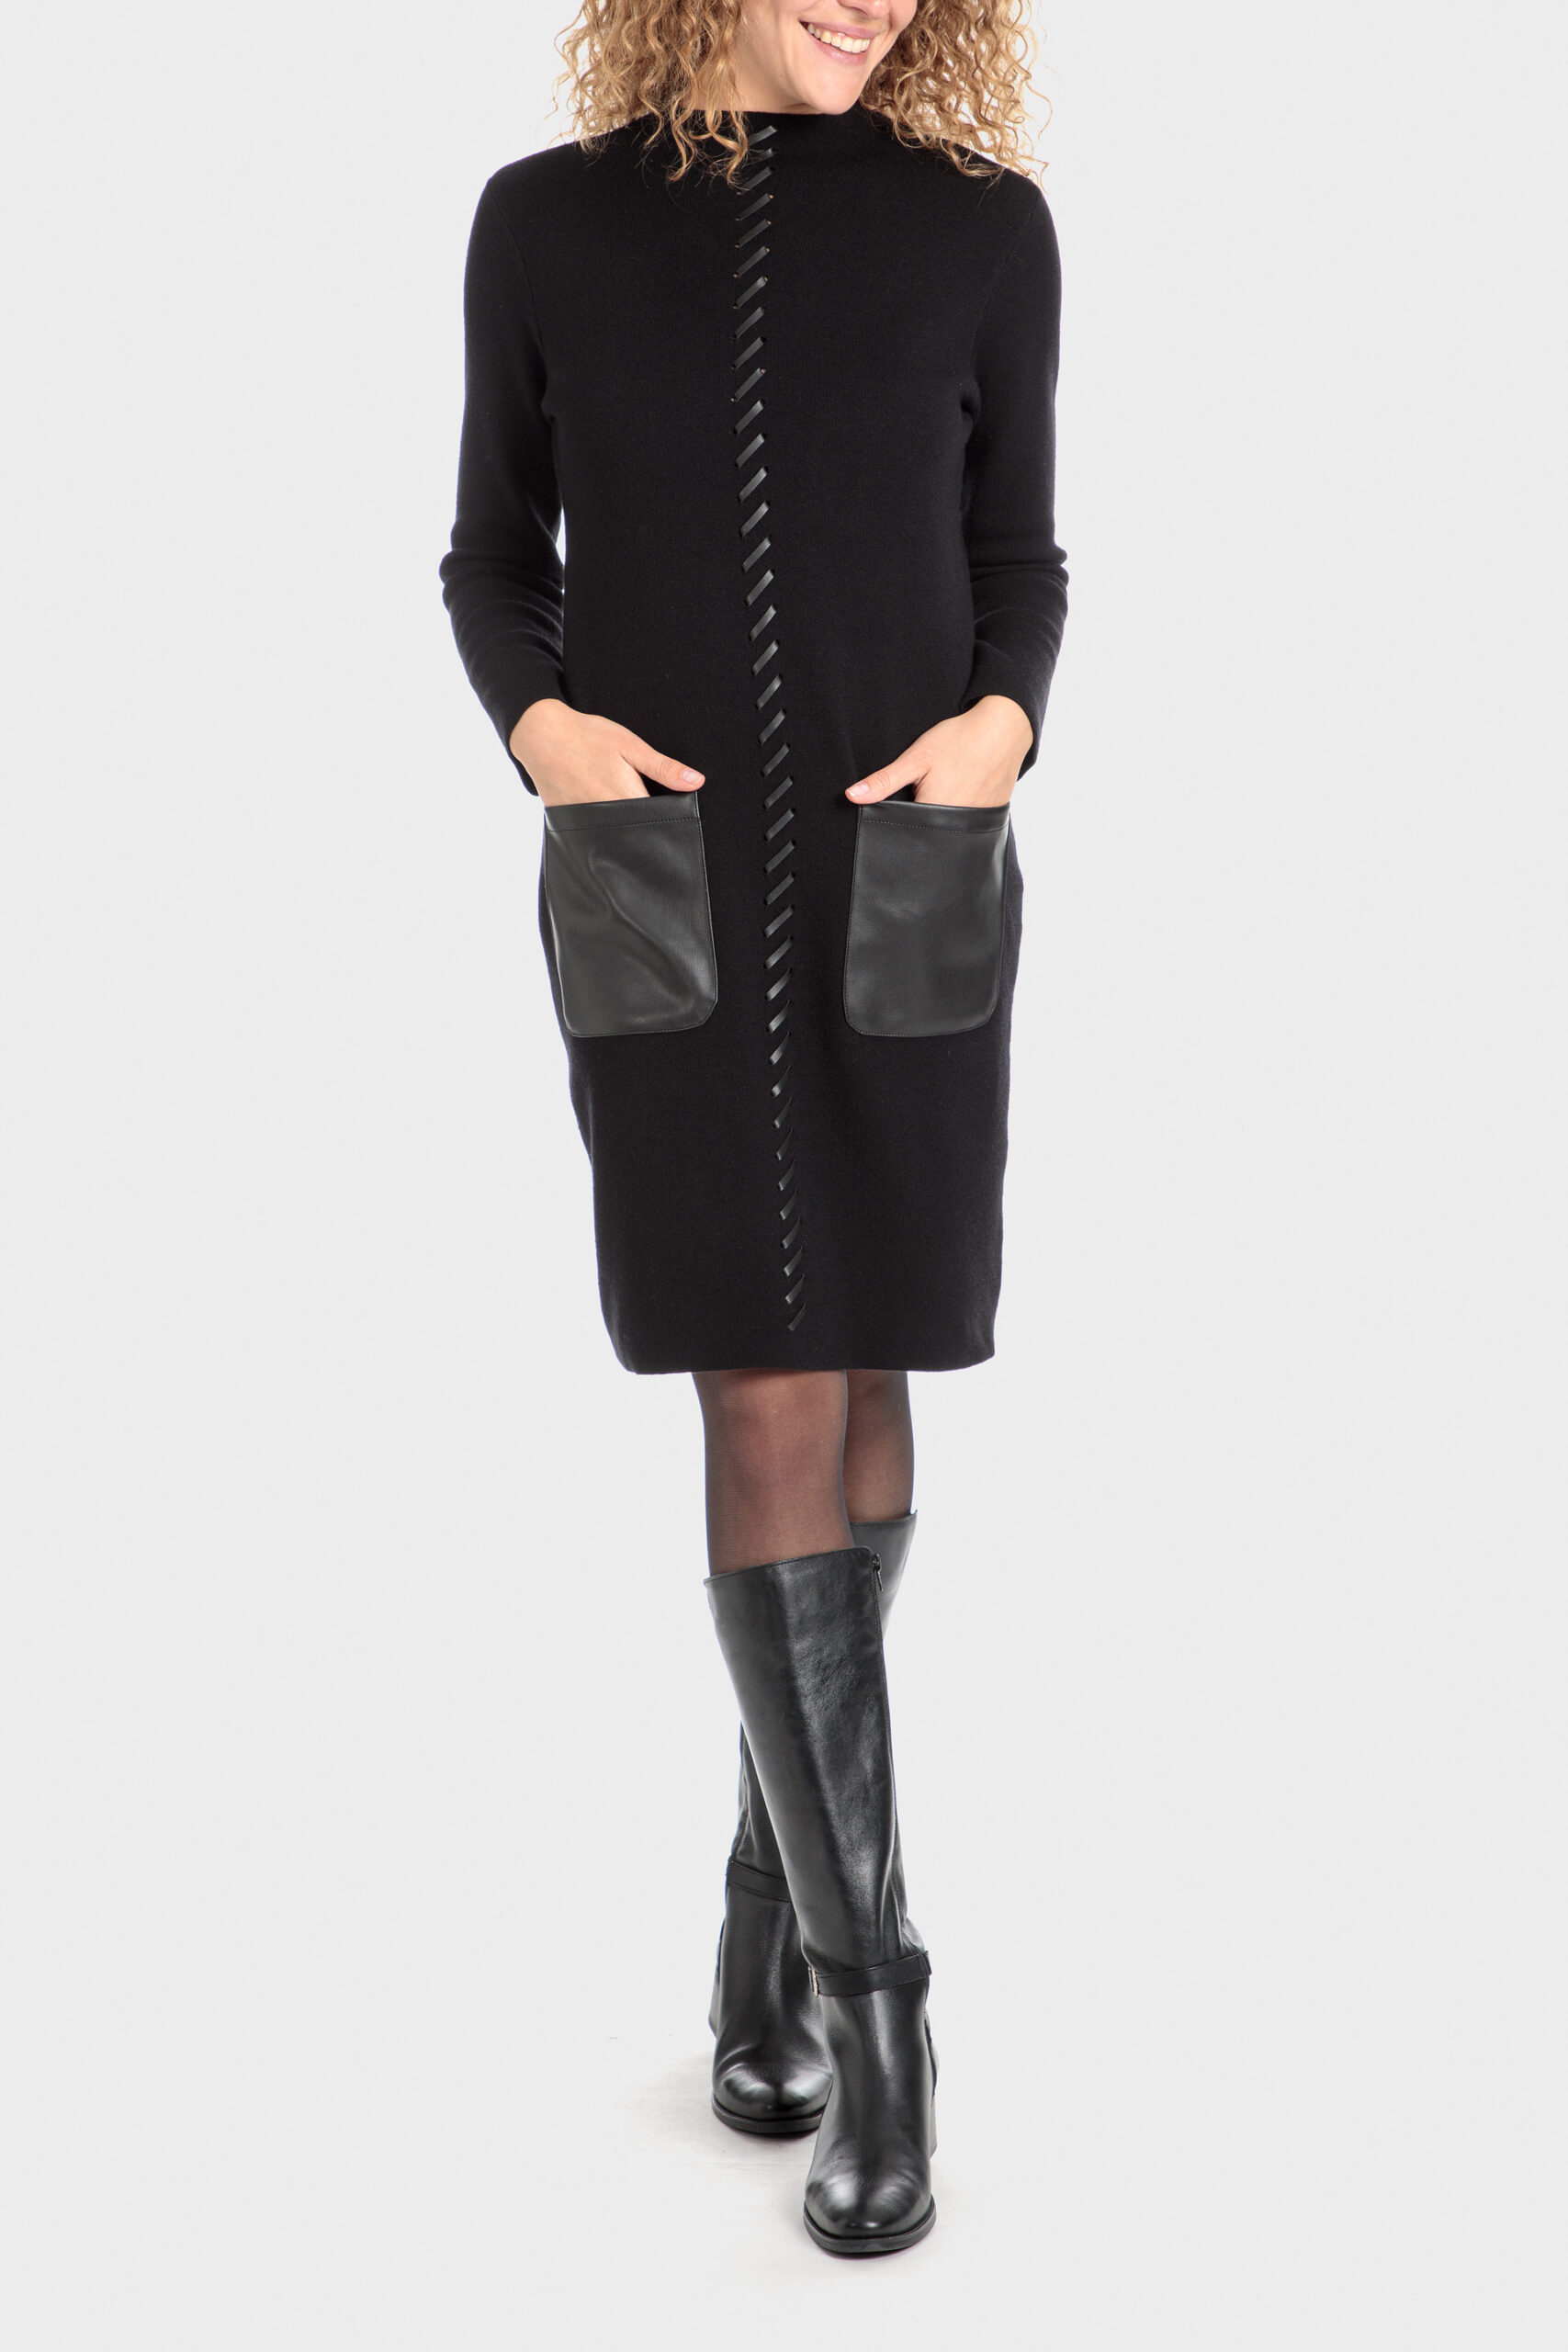 Black dress 418700 - Punt Roma by Mode Confort | Sommerkleider